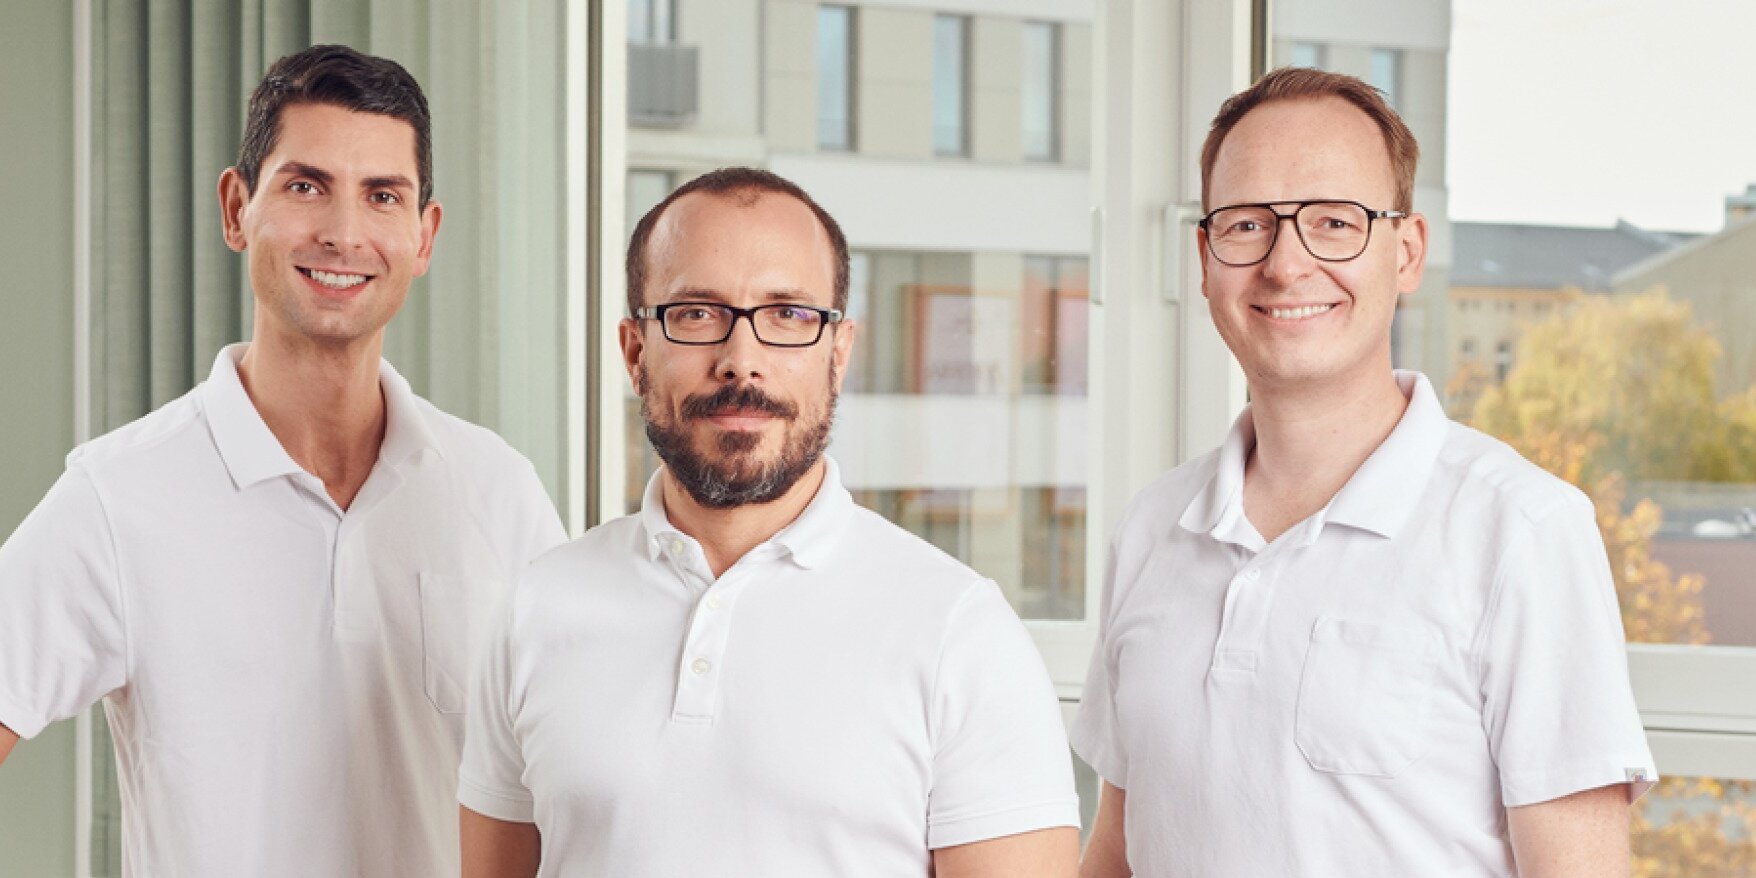 Teamfoto: Drei Ärzte in weißer Arbeitskleidung